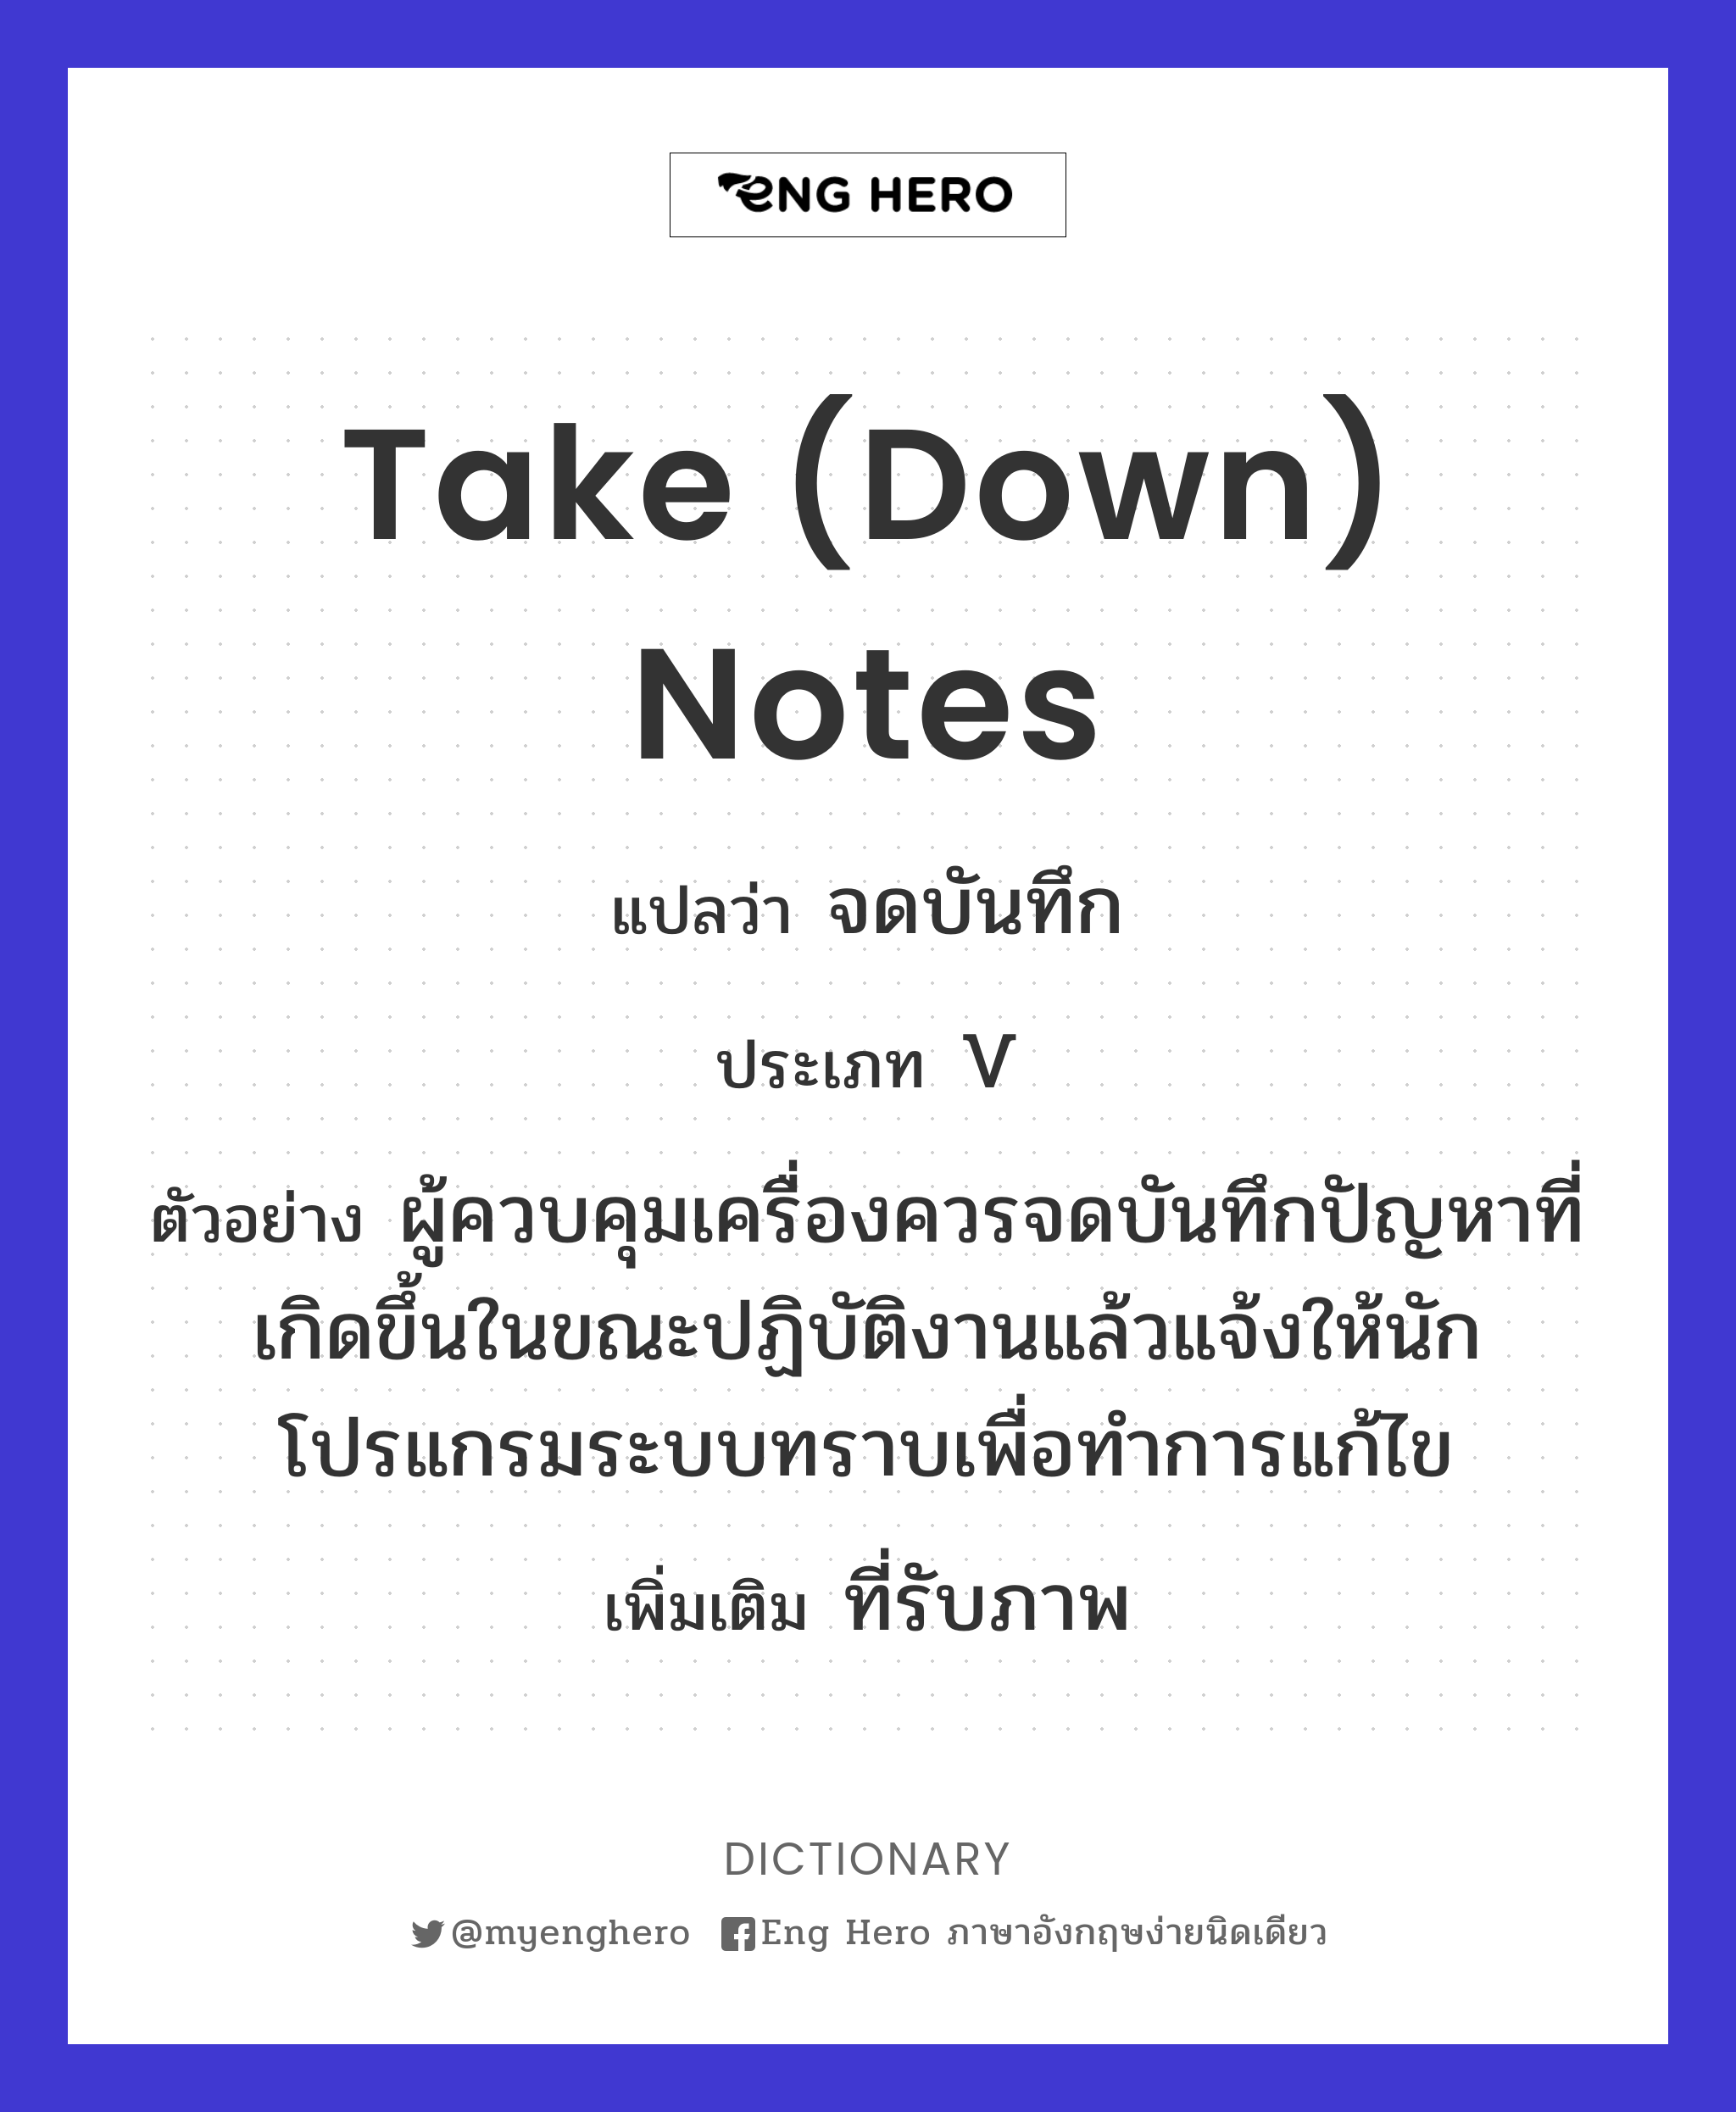 take (down) notes